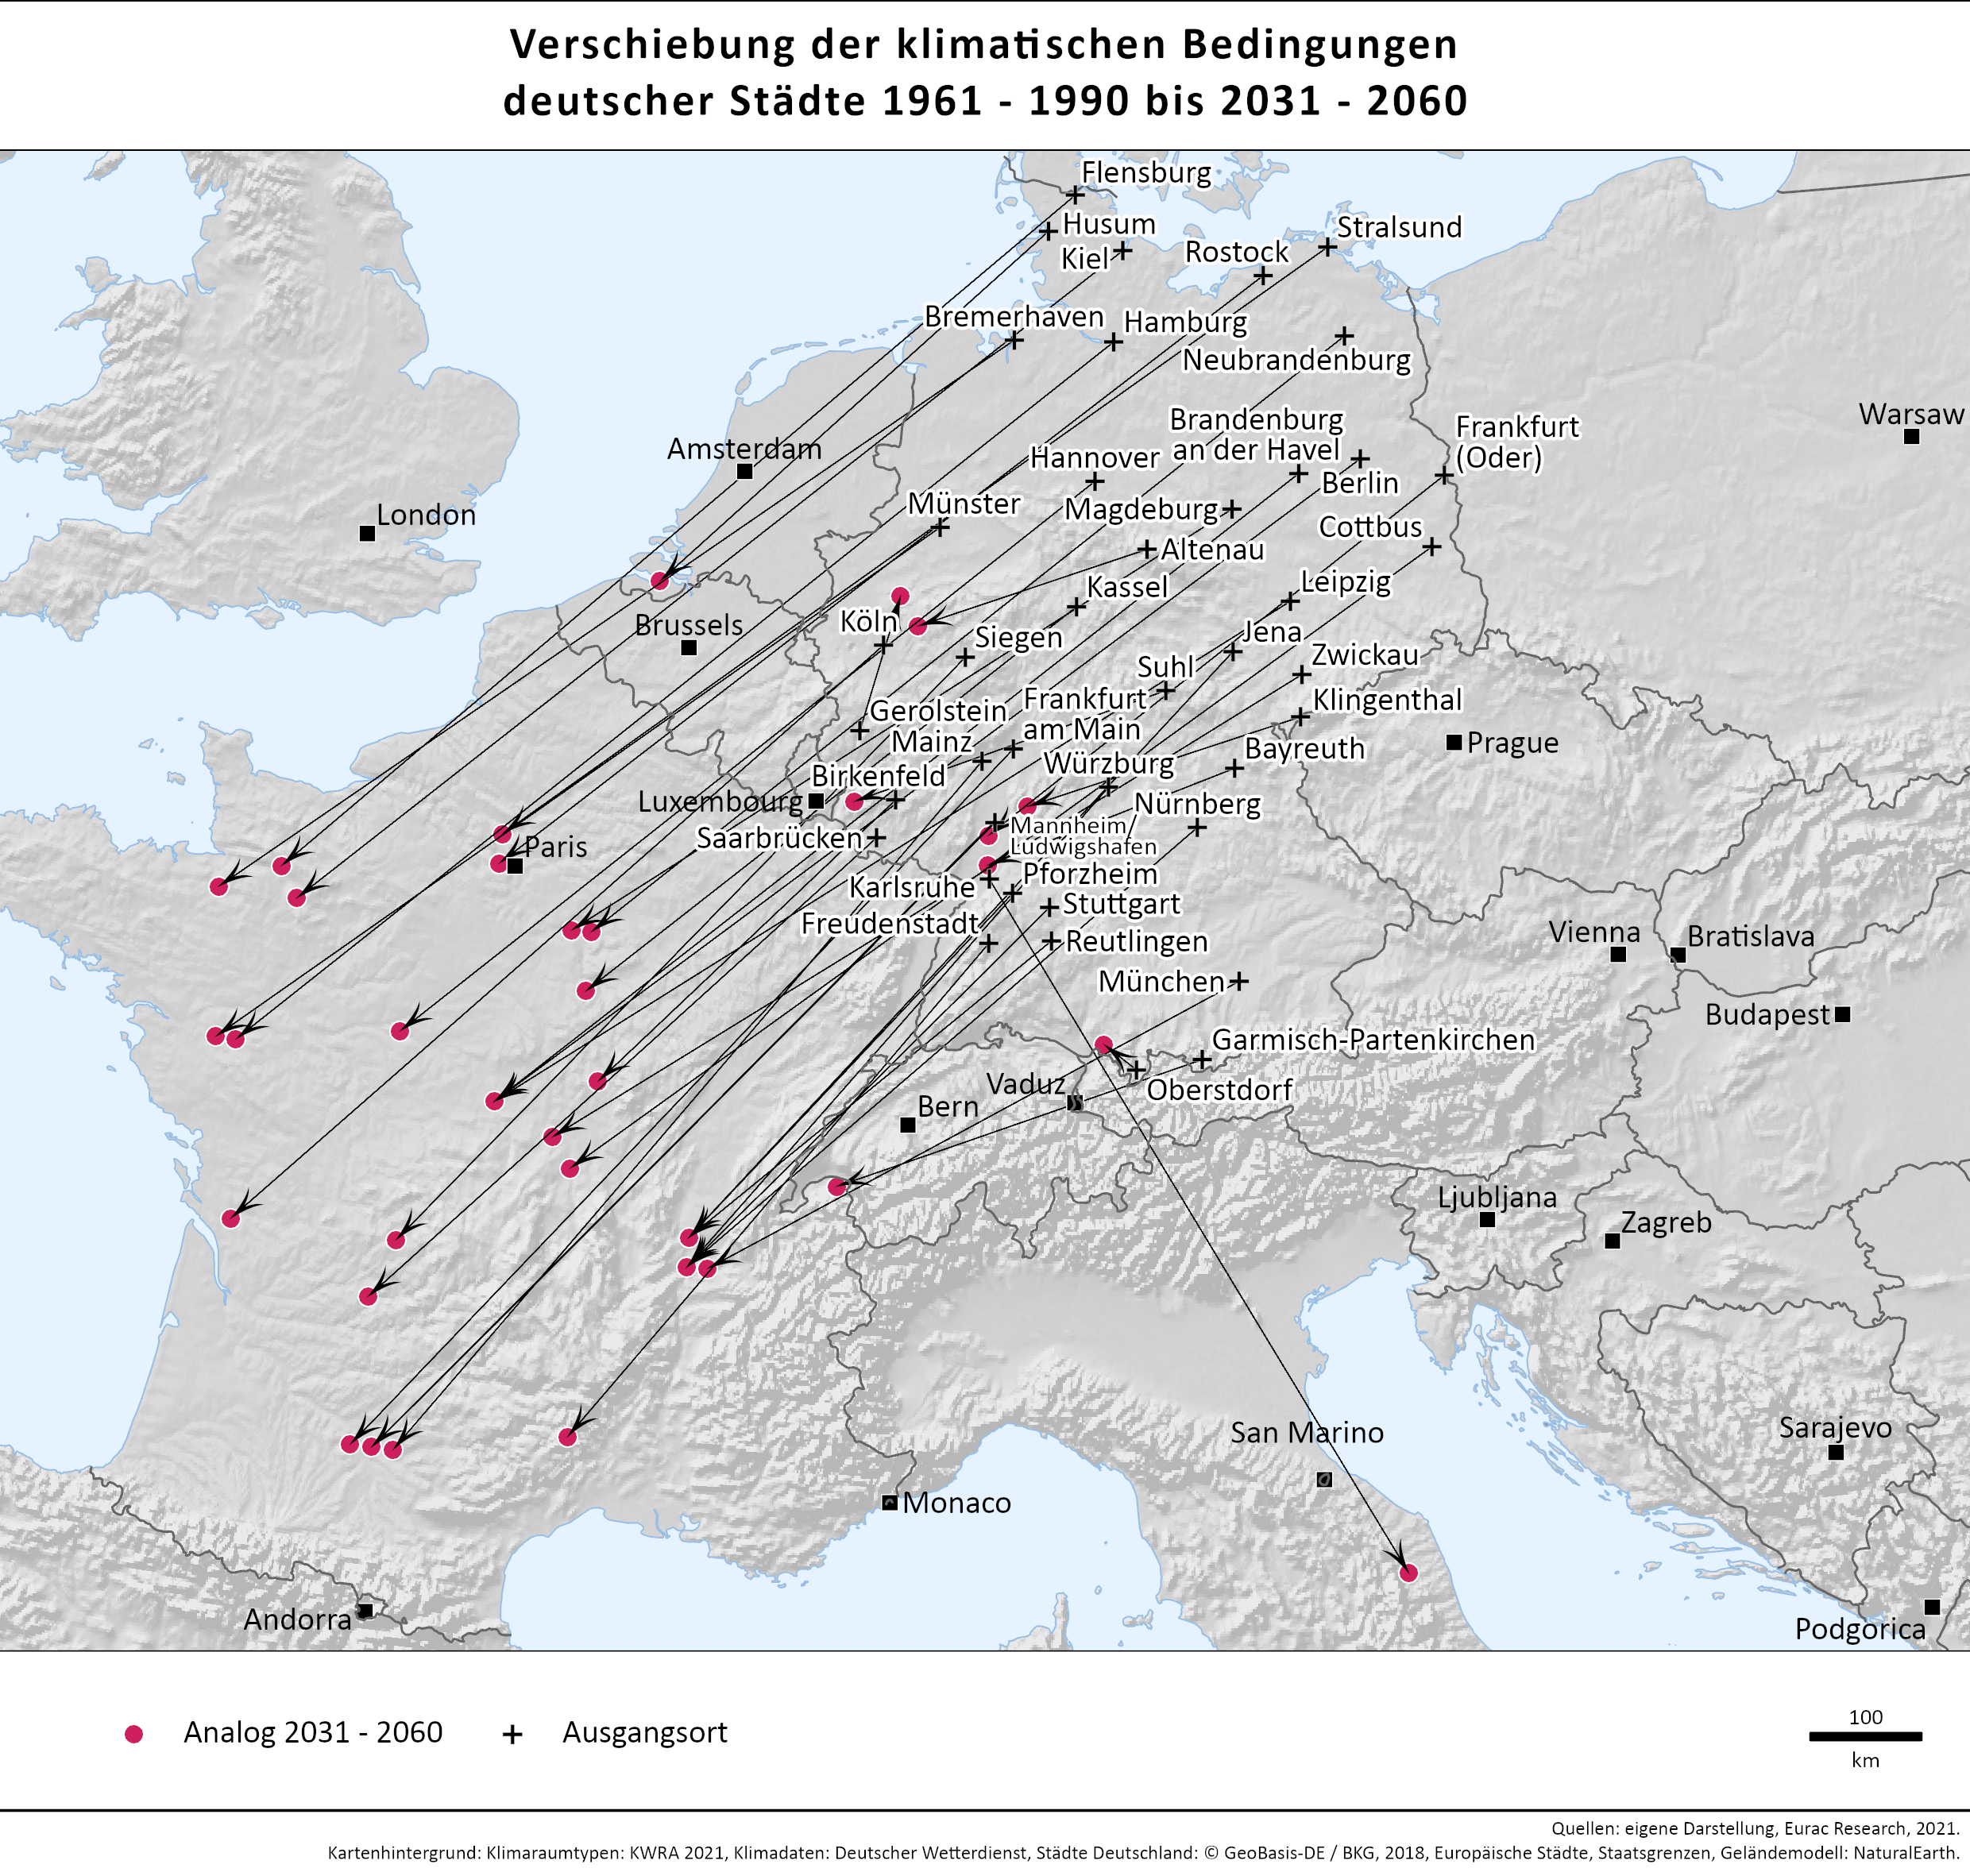 Zu sehen sind die beschriebenen Klimaanalogien der deutschen Städte in einer Europakarte für den Zeitraum 2031-2060